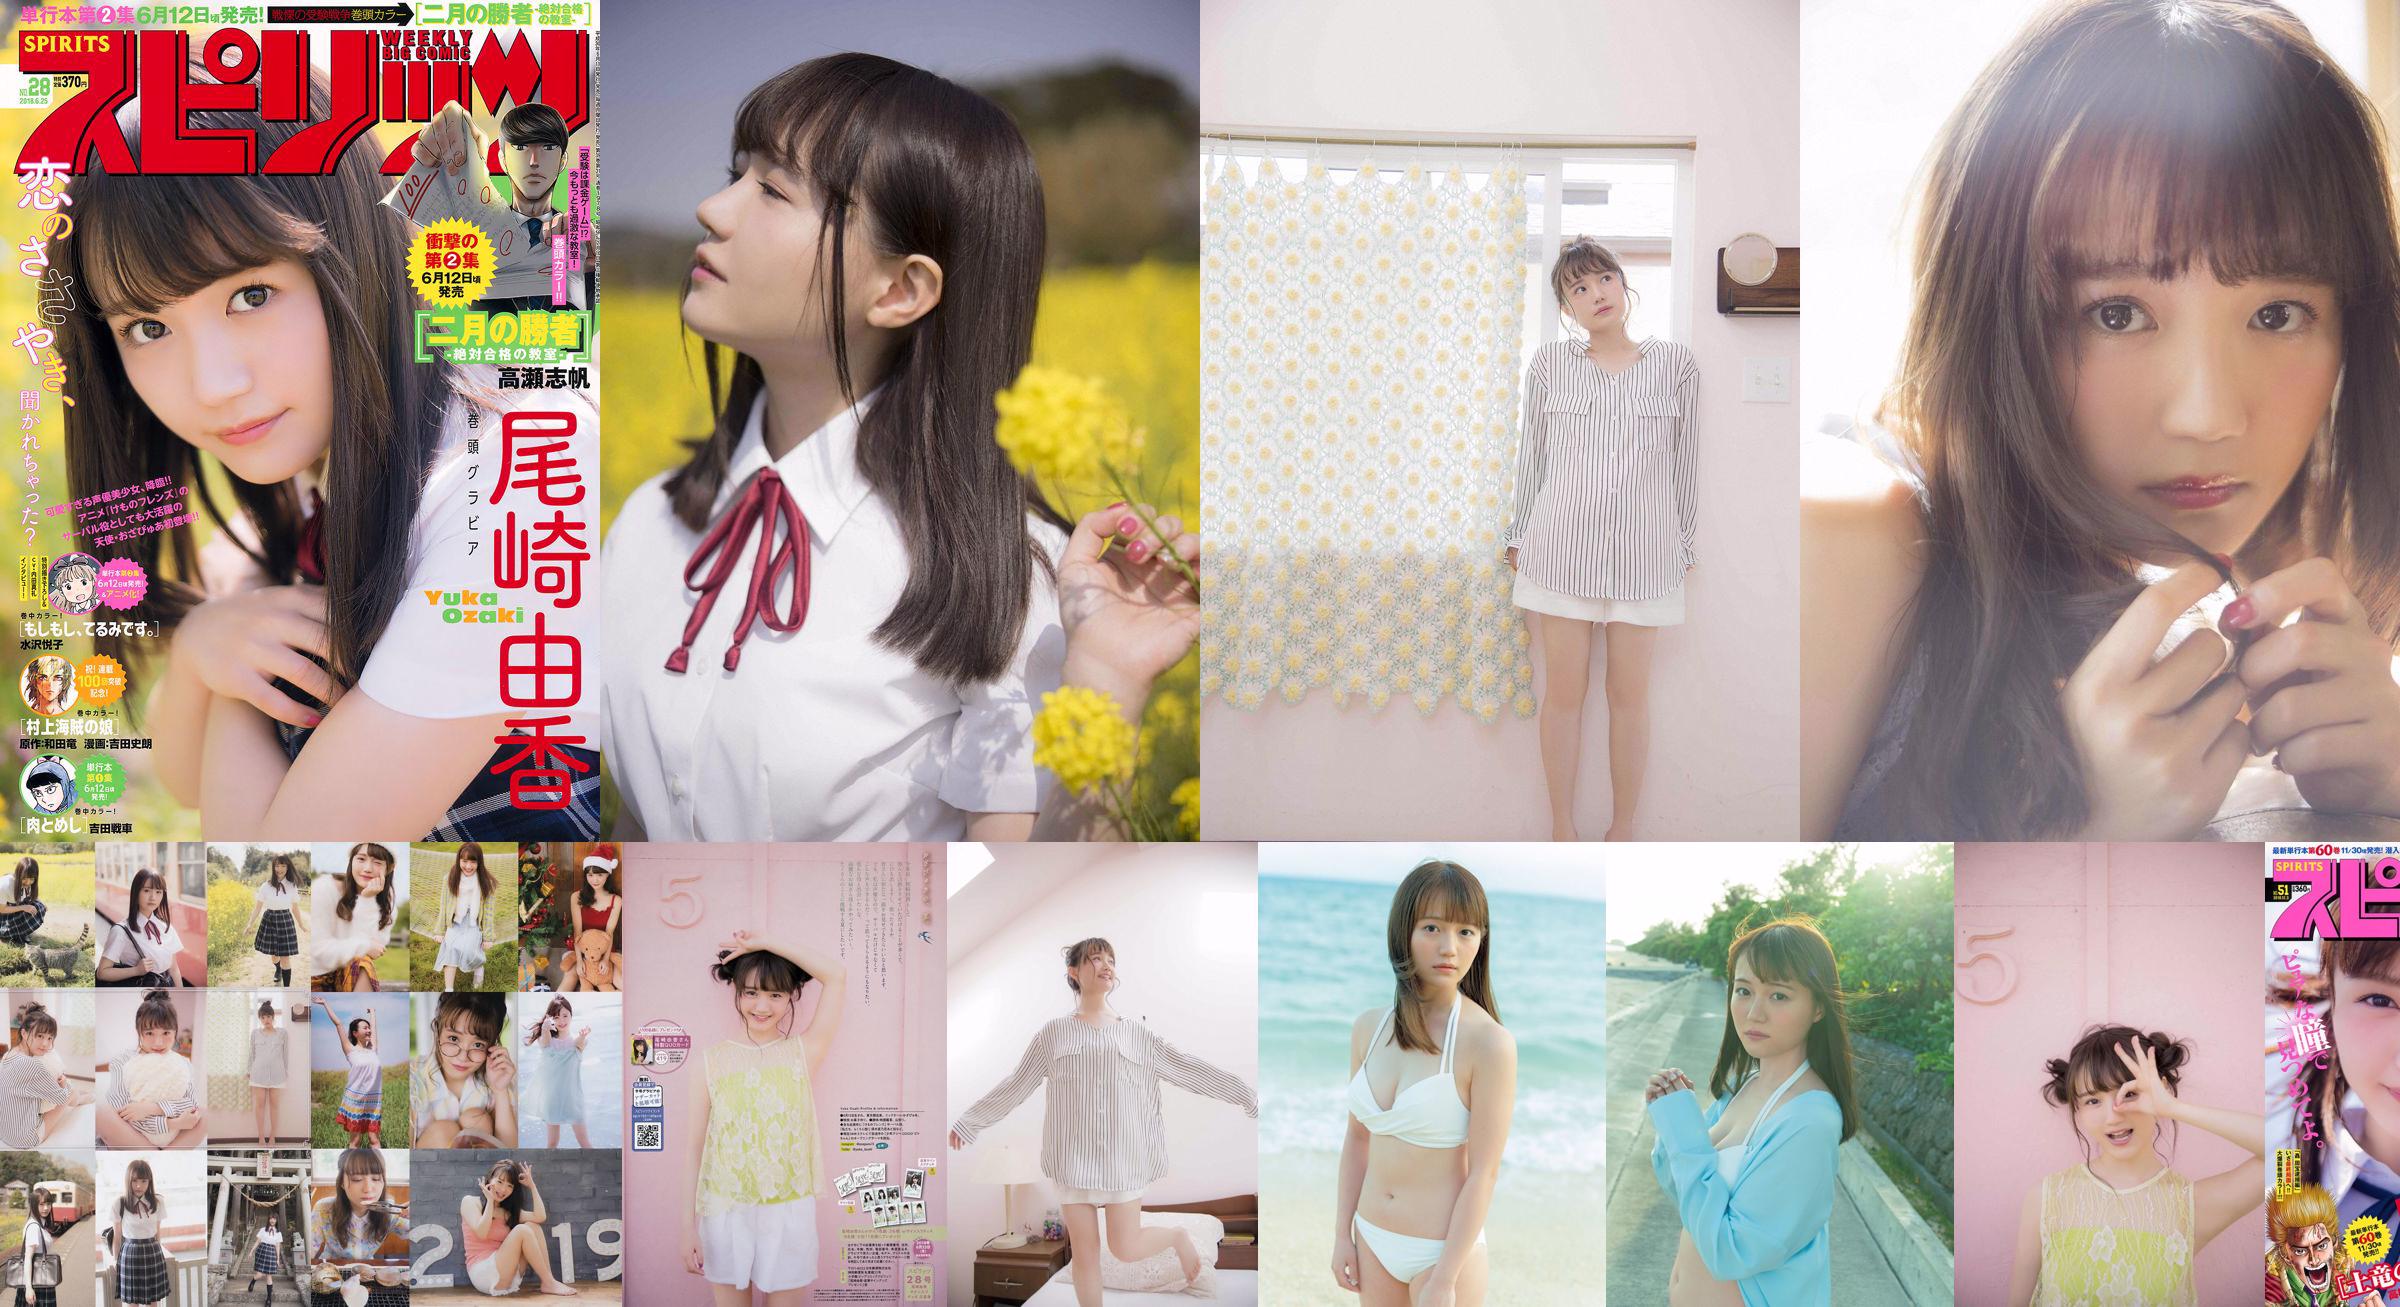 [วันศุกร์] Yuka Ozaki "นักพากย์ตัวละครหลักของอนิเมะ" Kemono Friends "ตอนนี้อยู่ในชุดบิกินี่สีขาว" Photo No.ea7a55 หน้า 3